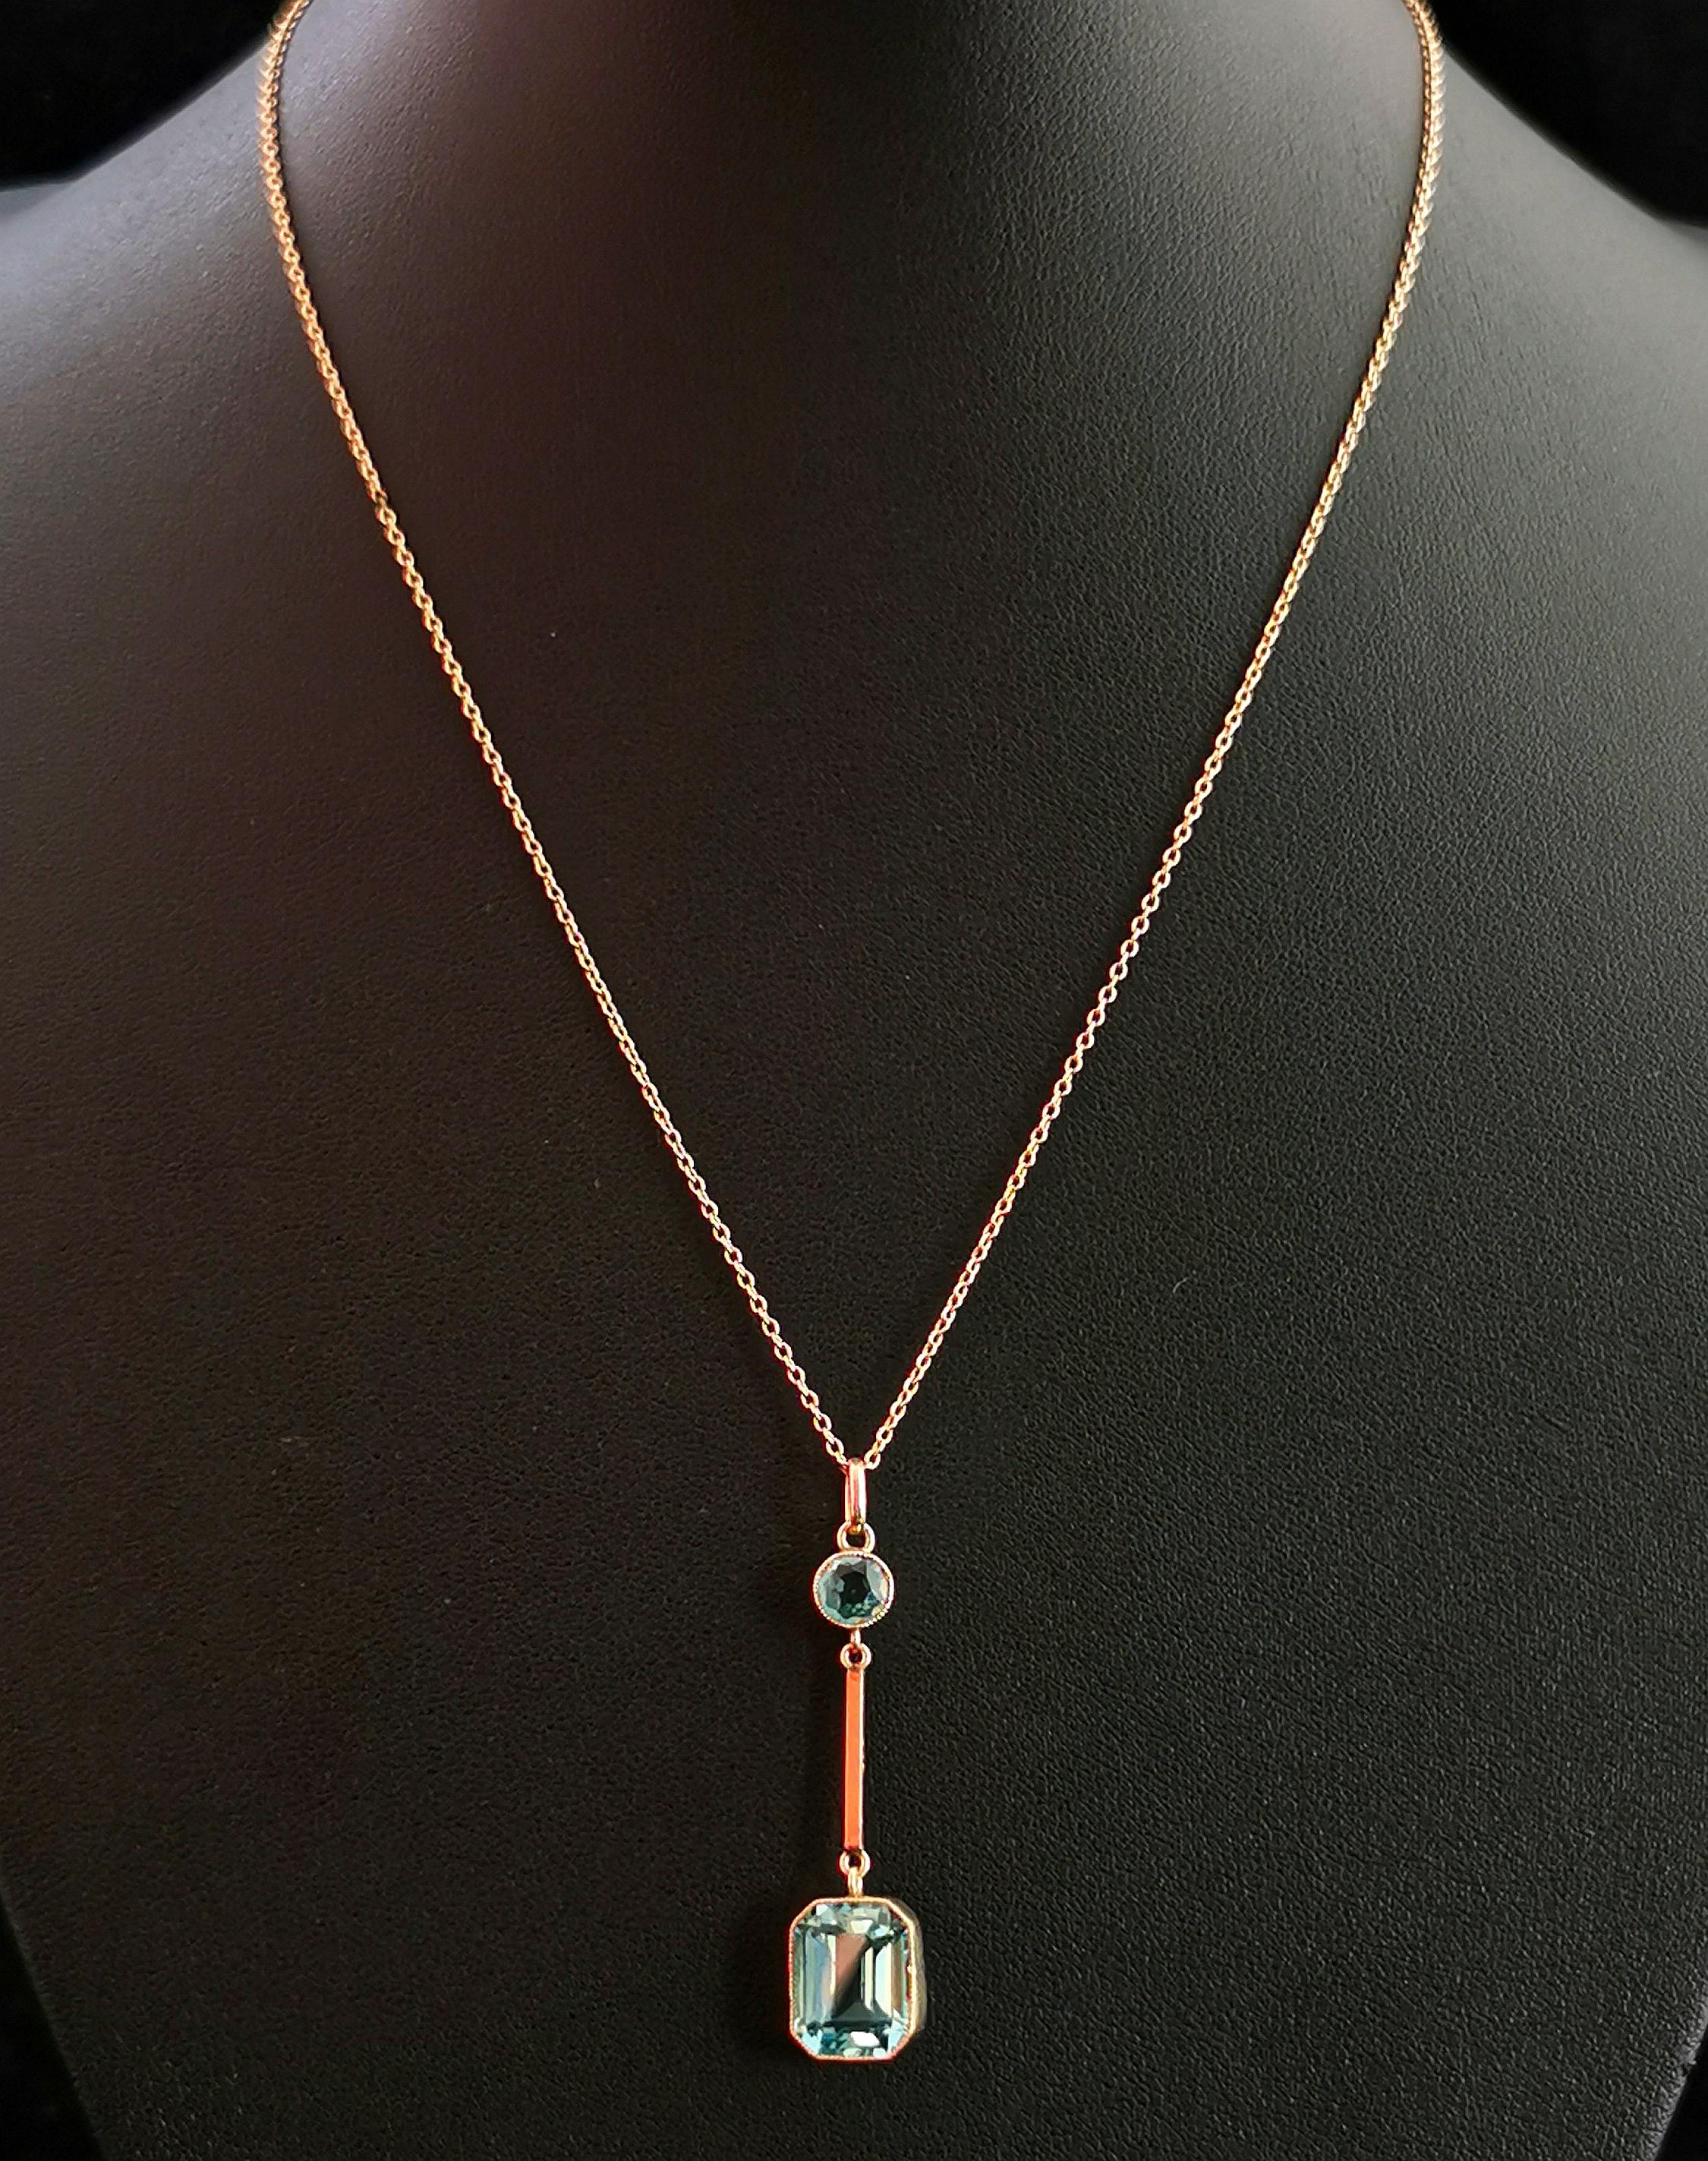 Women's Antique Art Deco Blue Zircon drop pendant, 9k gold necklace 